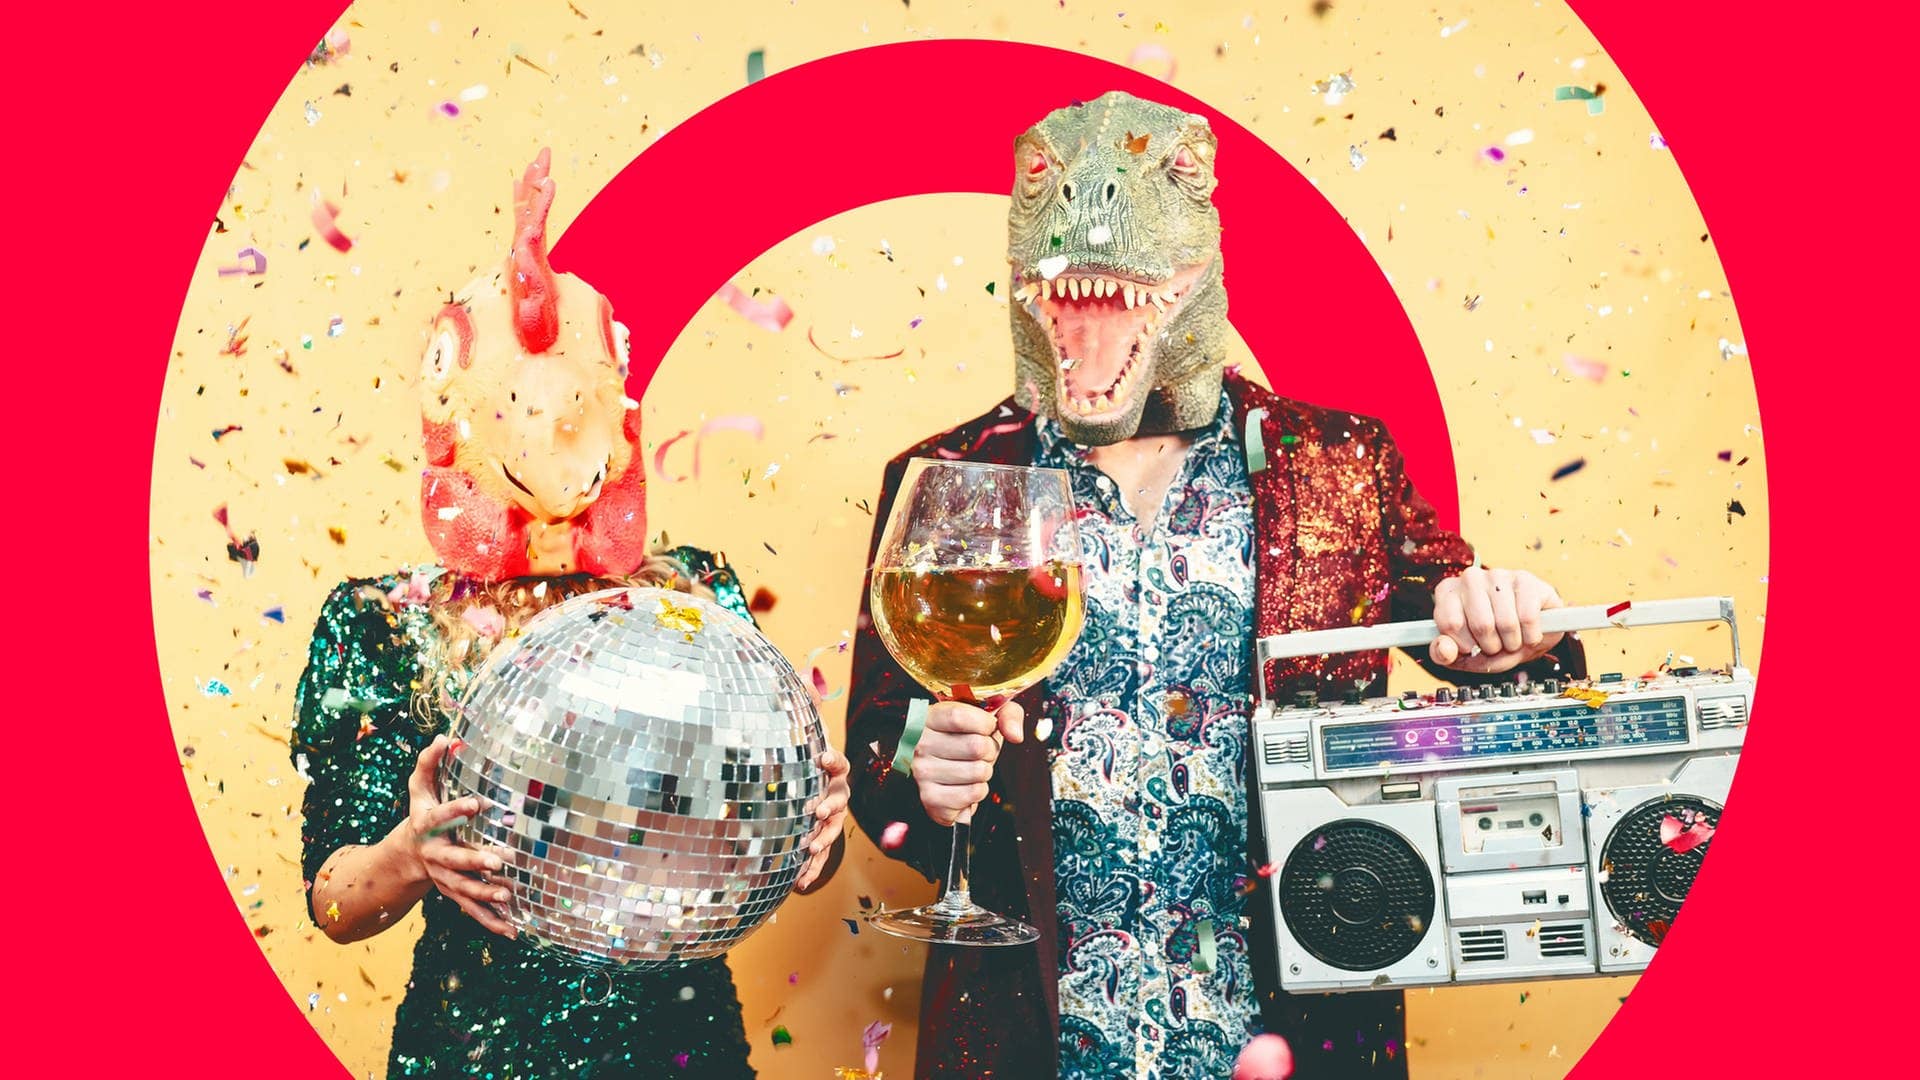 Zwei verkleidete Menschen mit Tier-Masken, einer Disco-Kugel und einem Weinglas: An Pfingstmontag spielt SWR3 wieder verrückt (Foto: Adobe Stock, Alessandro Biascioli)